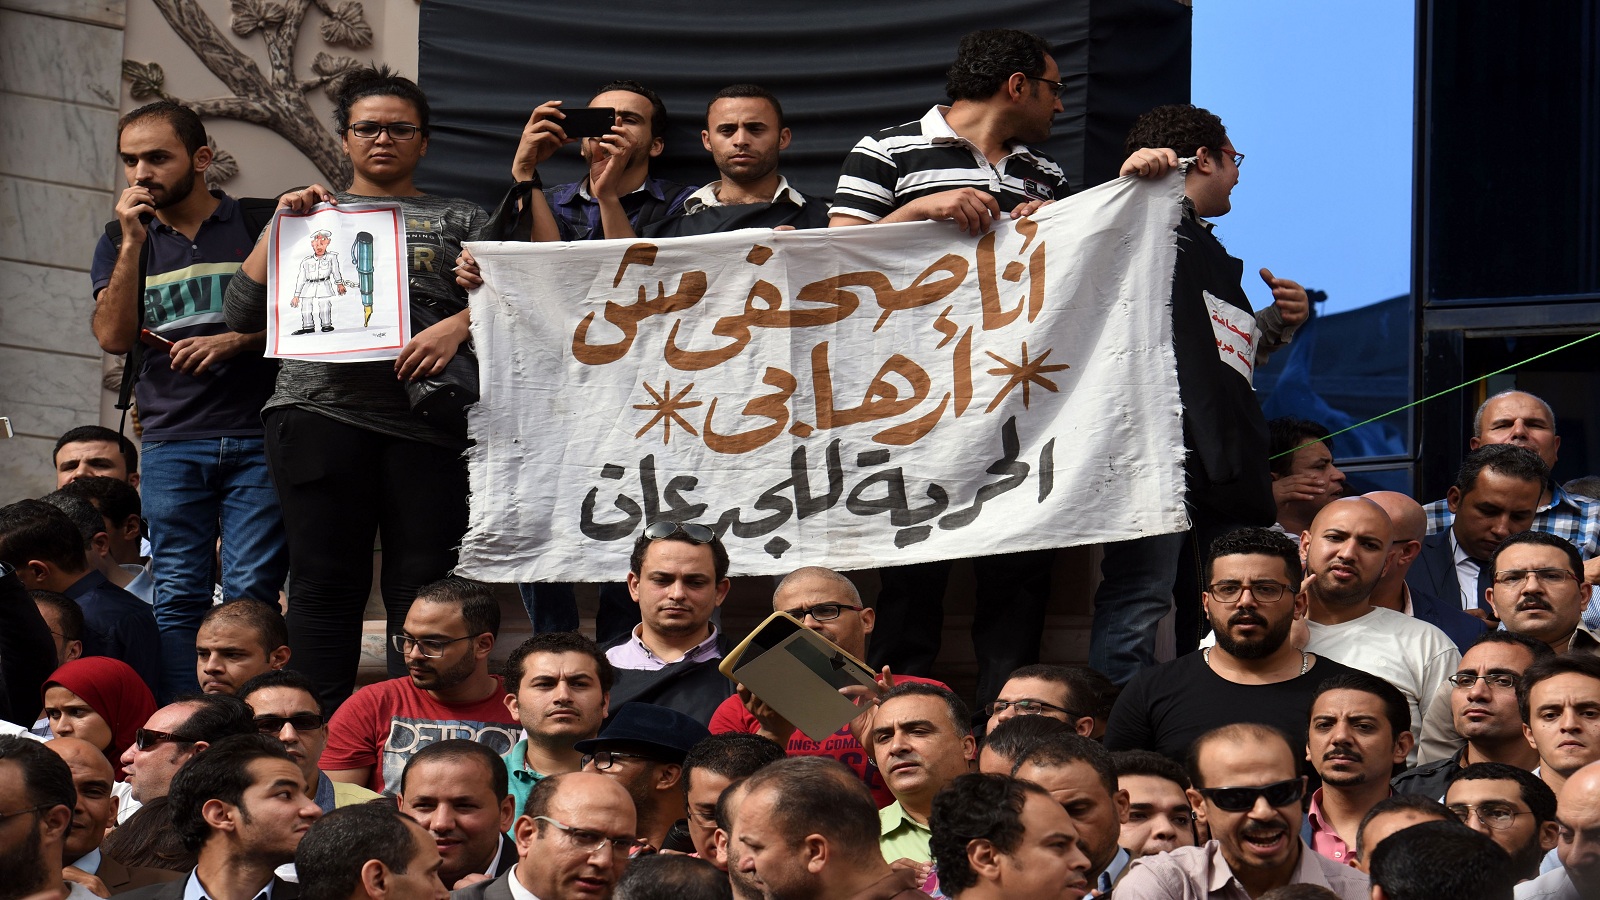 القضاء المصري يُدرج 15 صحافياً في قائمة "الكيانات الإرهابية"